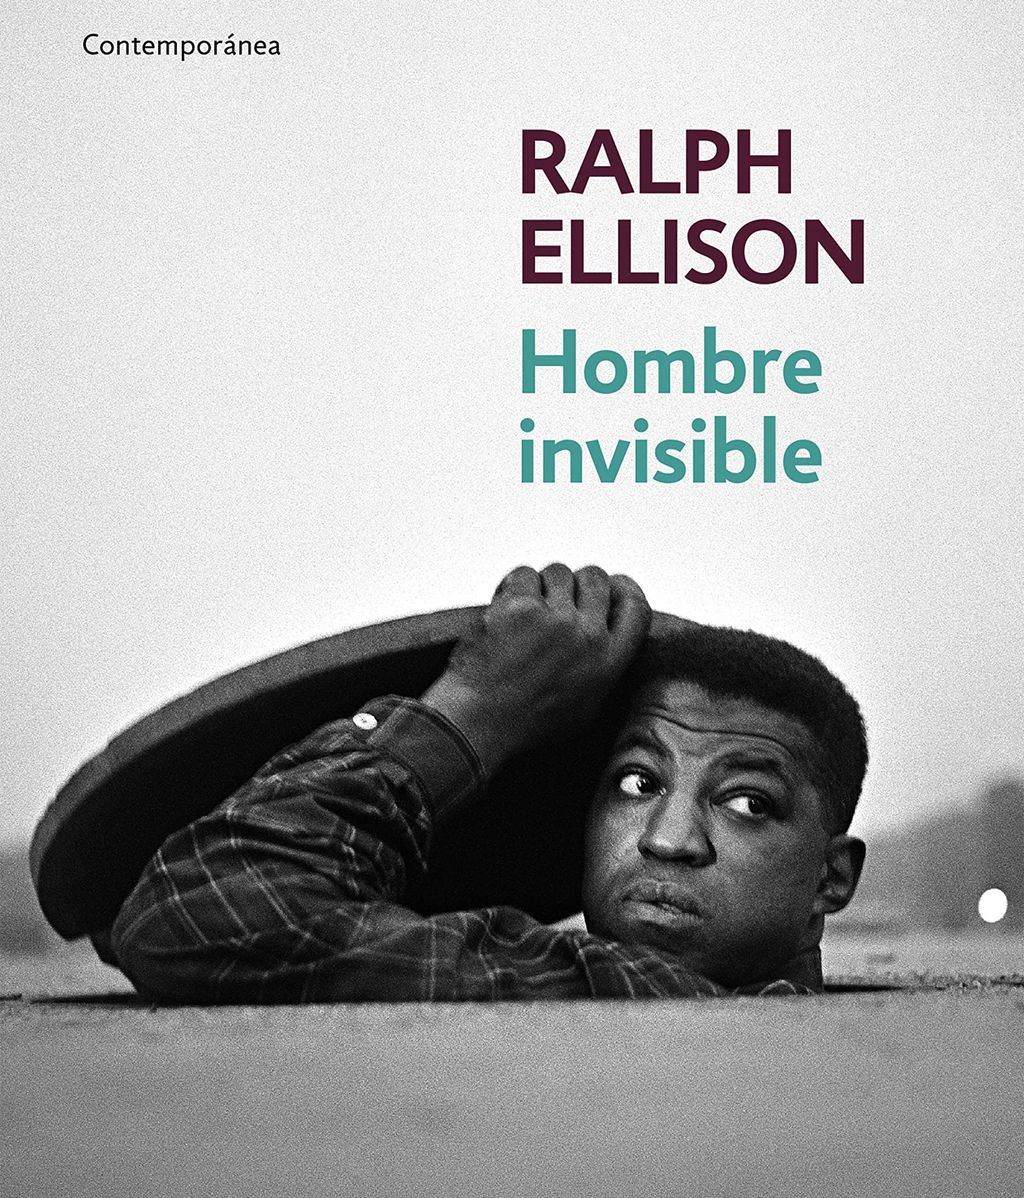 La novela de Ellison es una radiografía de la identidad negra a mediados del s. XX